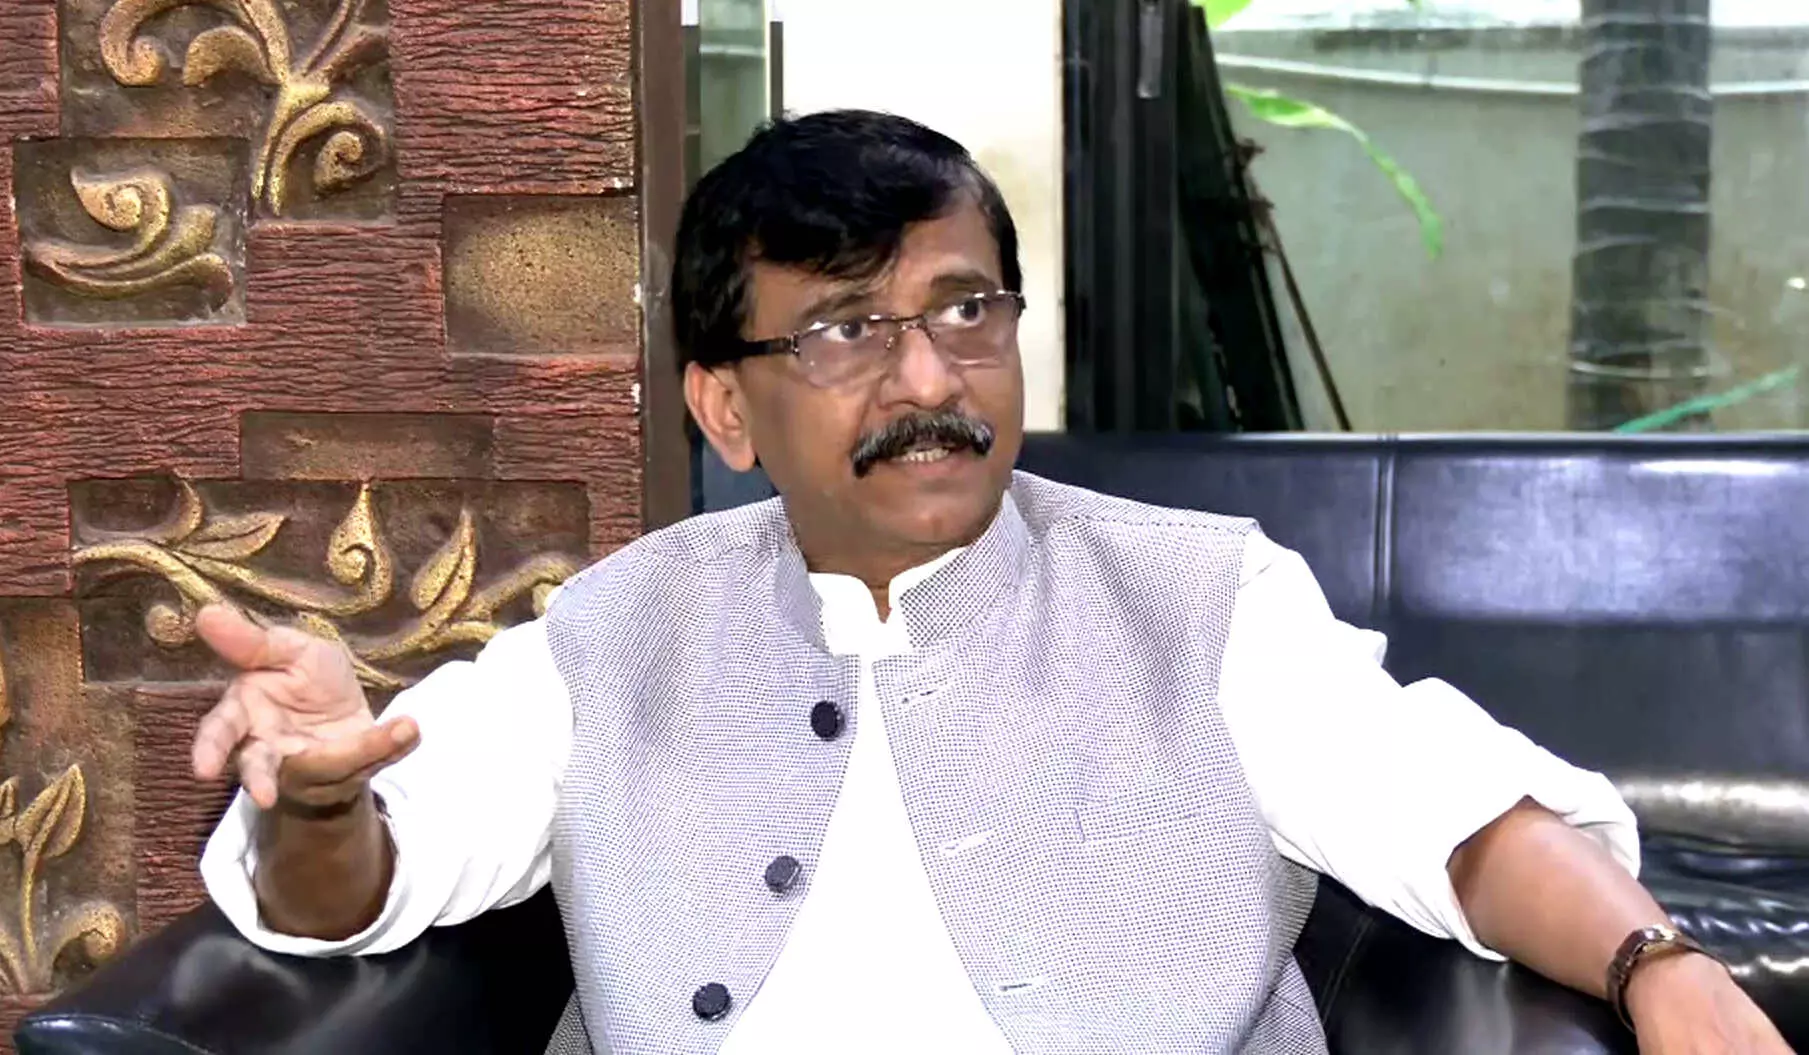 संजय राउत का बड़ा बयान, कहा- शिंदे गुट को स्वतंत्र पार्टी बनानी चाहिए, शिवसेना के नाम पर वोट नहीं मांगना चाहिए